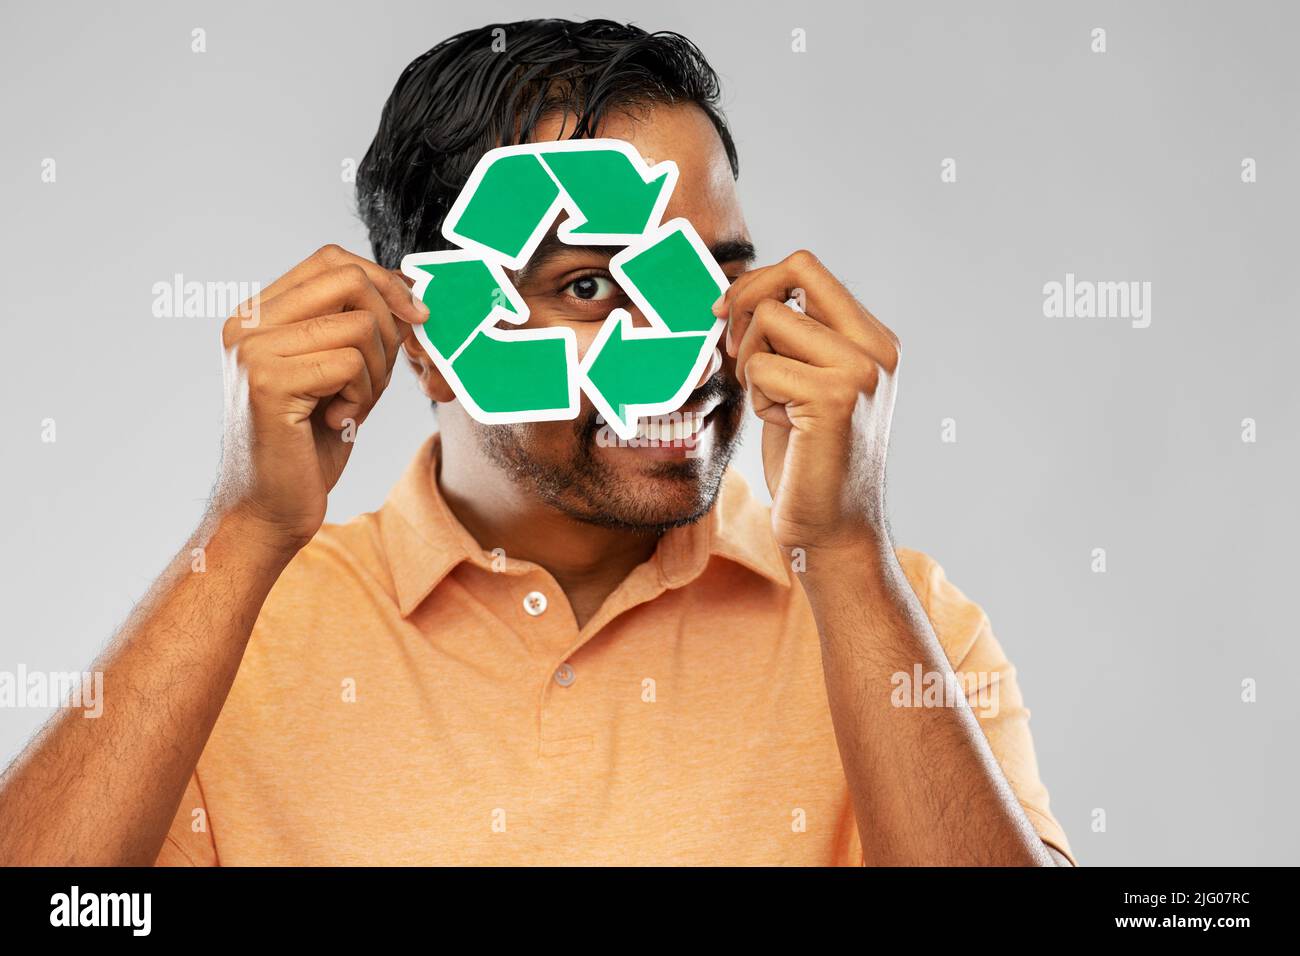 uomo indiano sorridente che tiene segno verde di riciclaggio Foto Stock